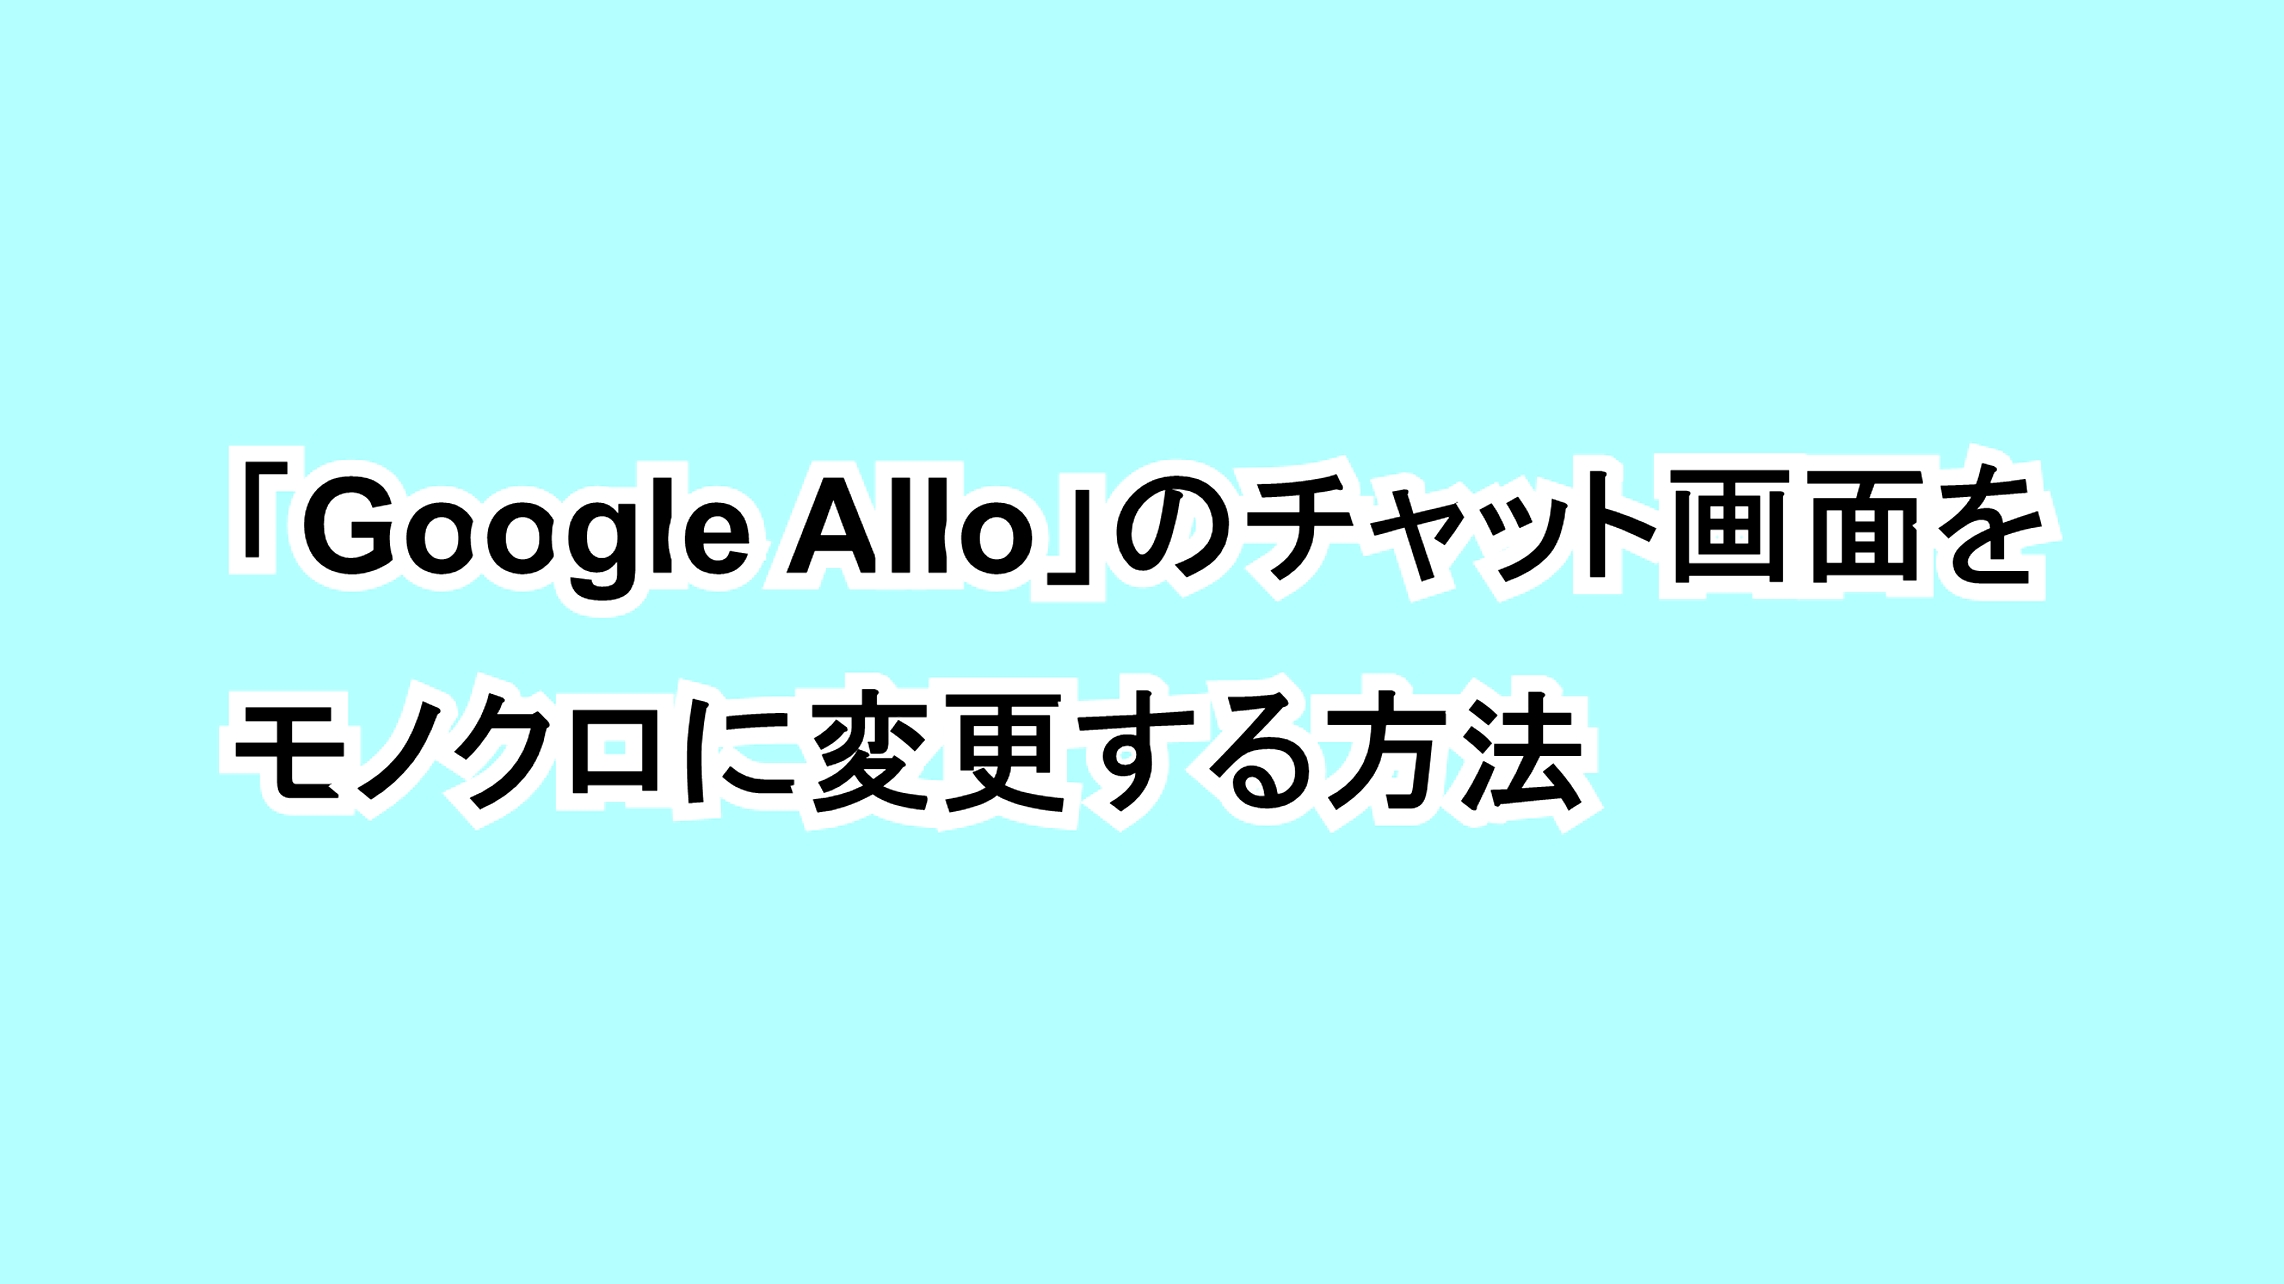 「Google Allo」のチャット画面をモノクロに変更する方法